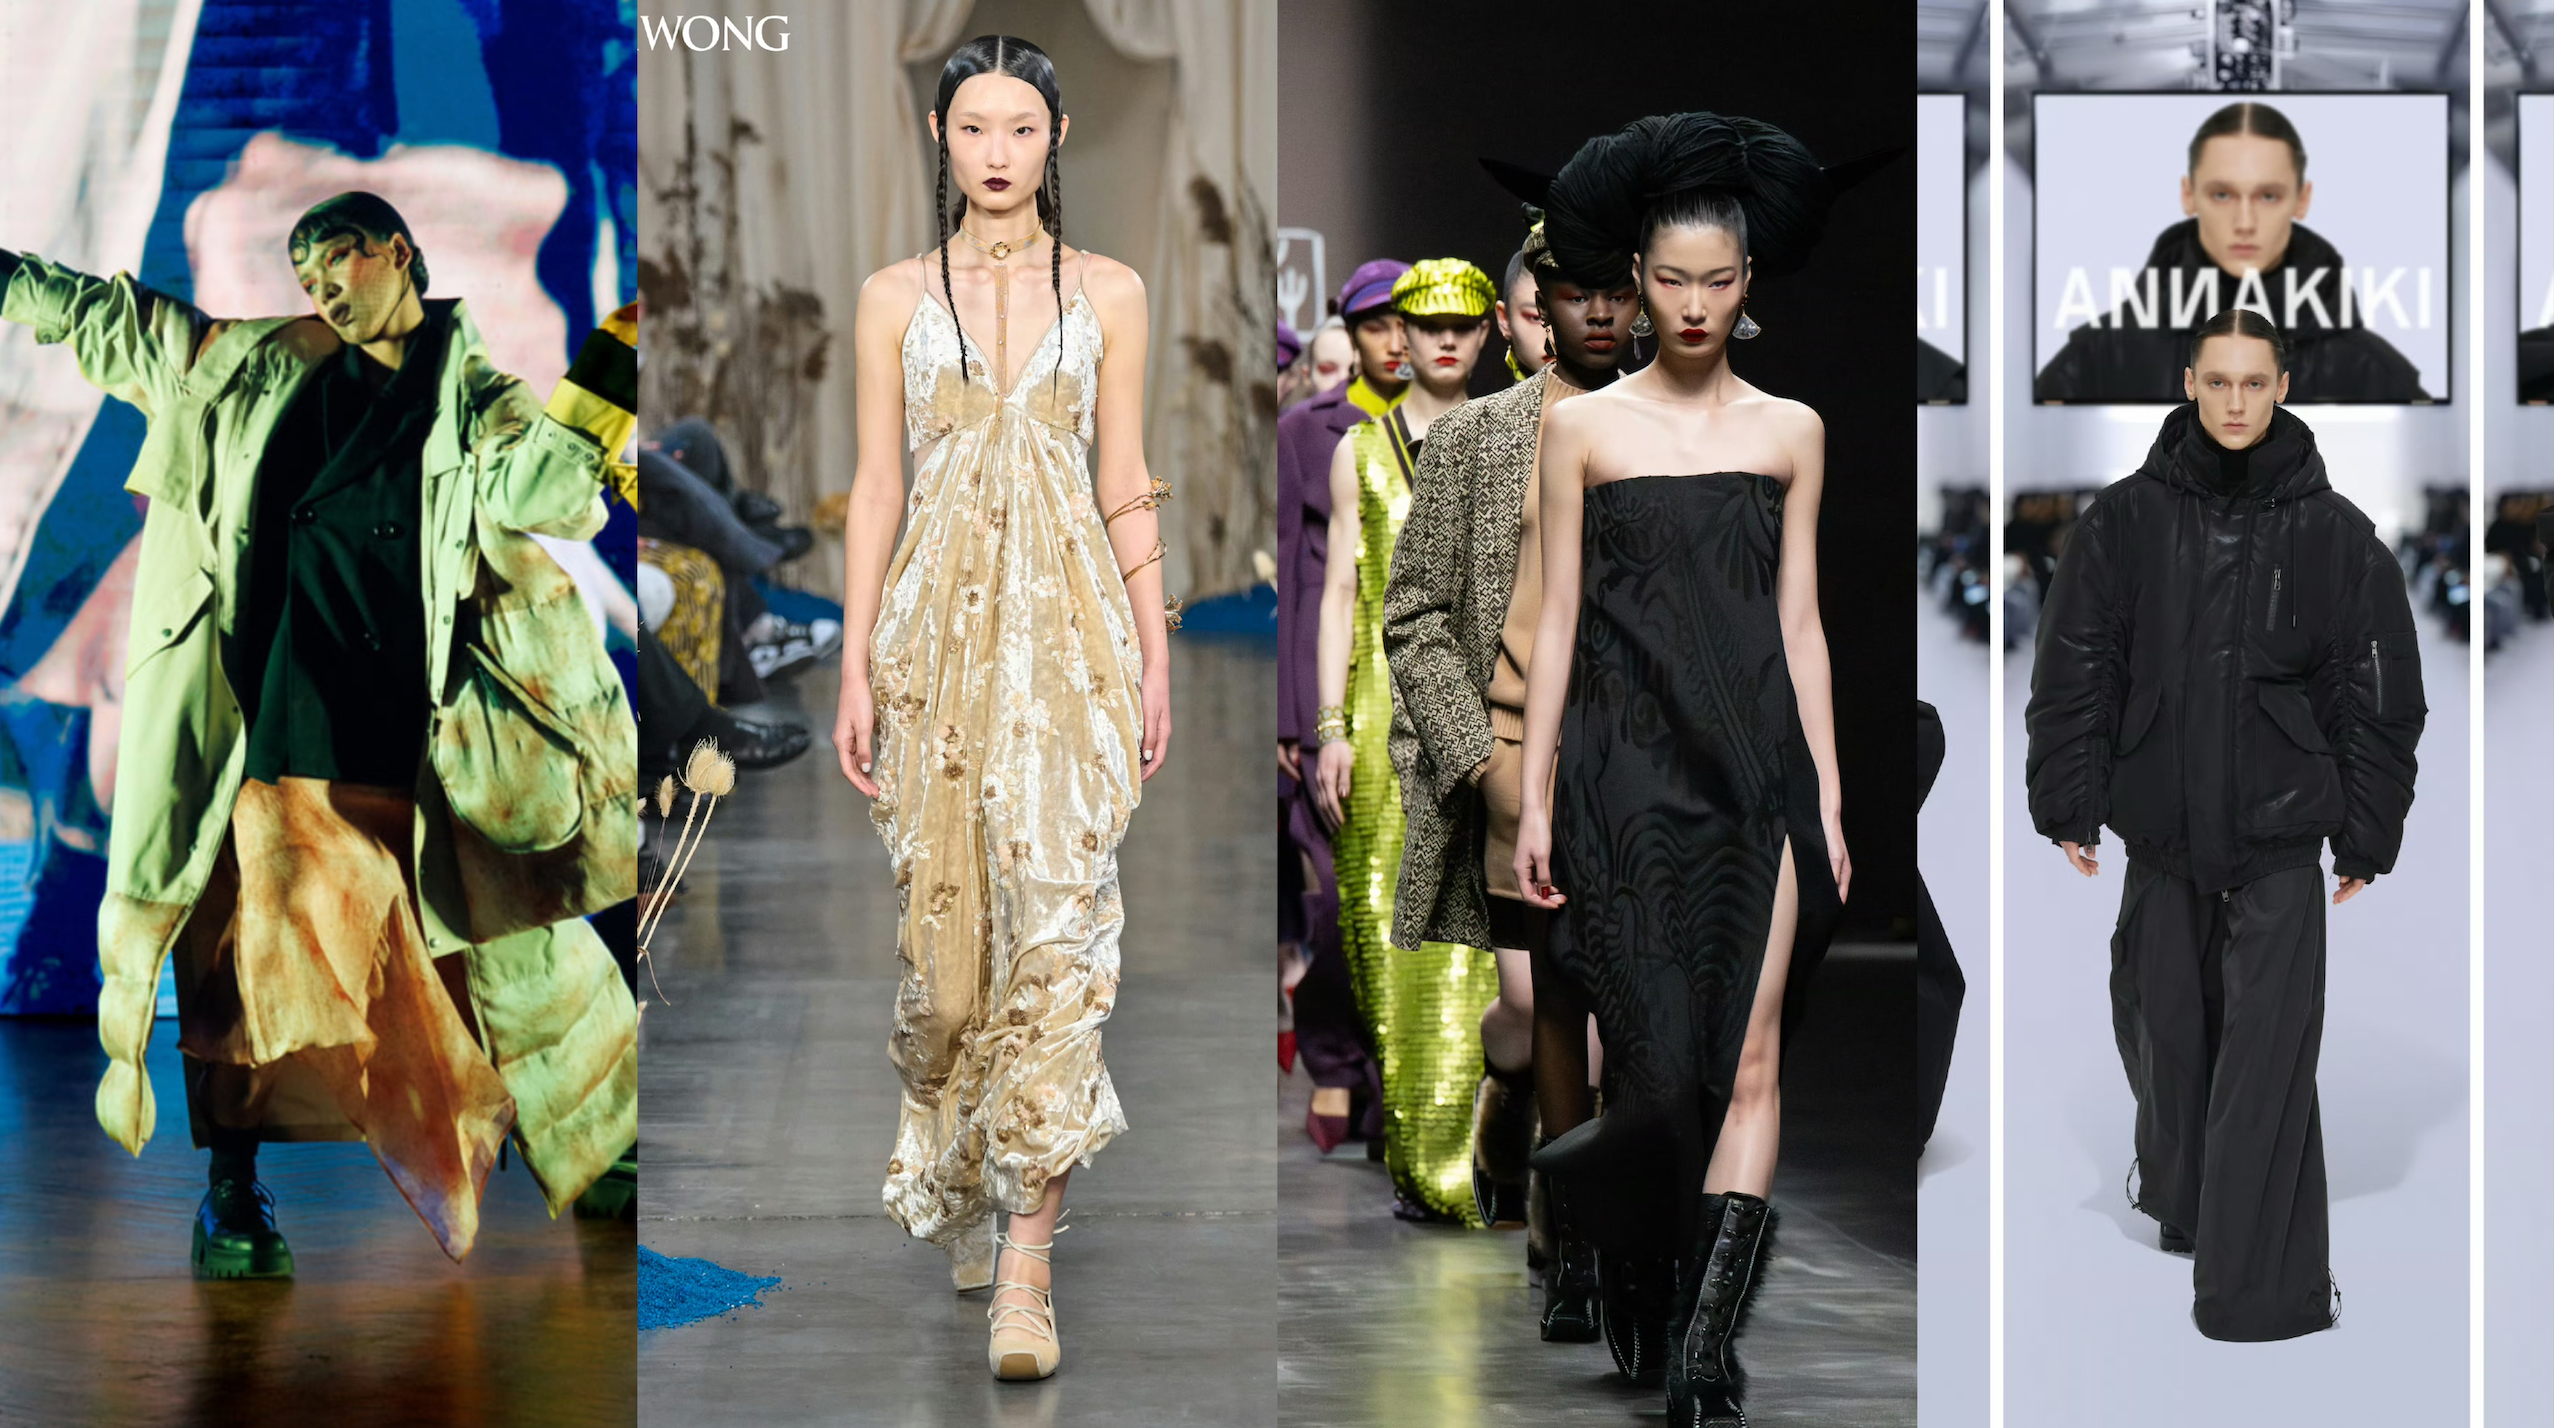 The Chinese designers making waves at Milan Fashion Week